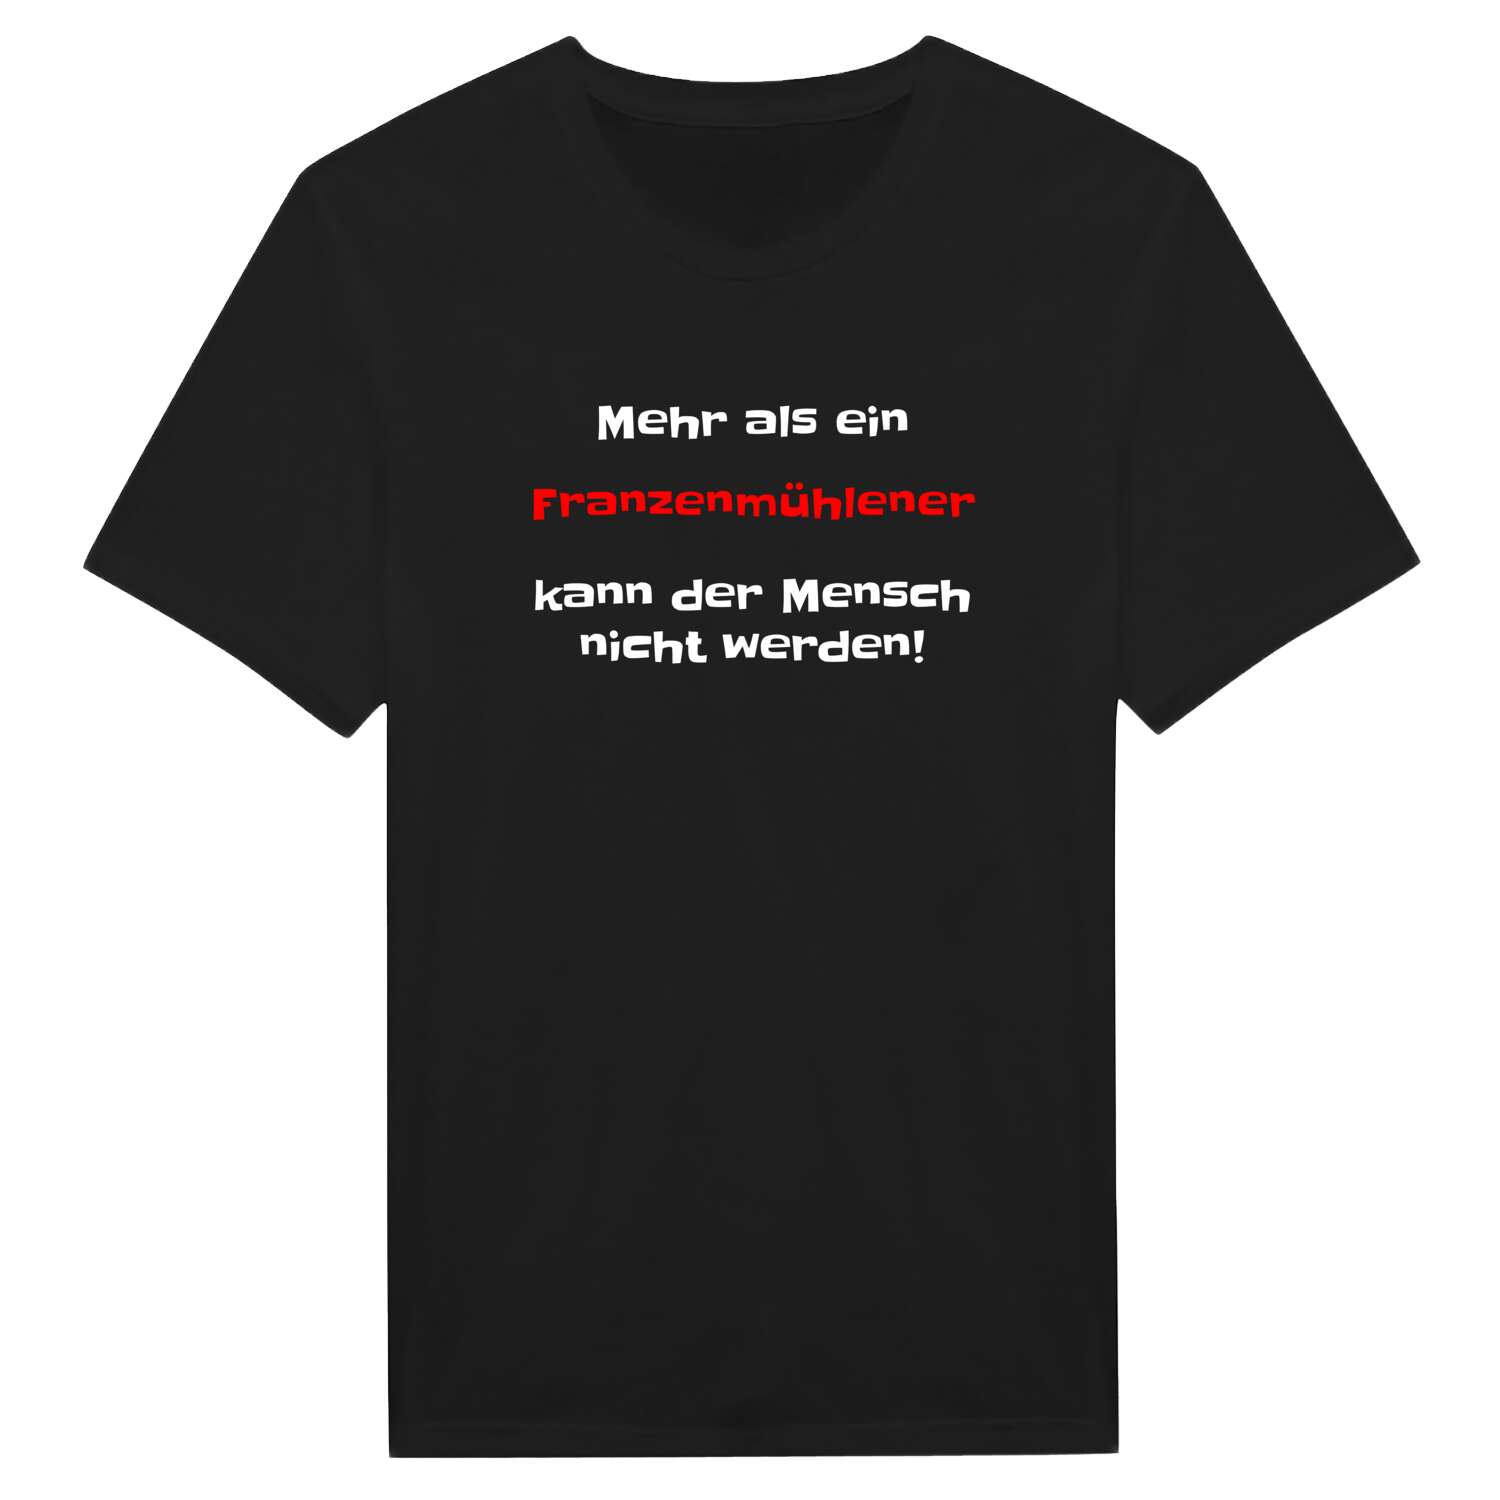 Franzenmühle T-Shirt »Mehr als ein«